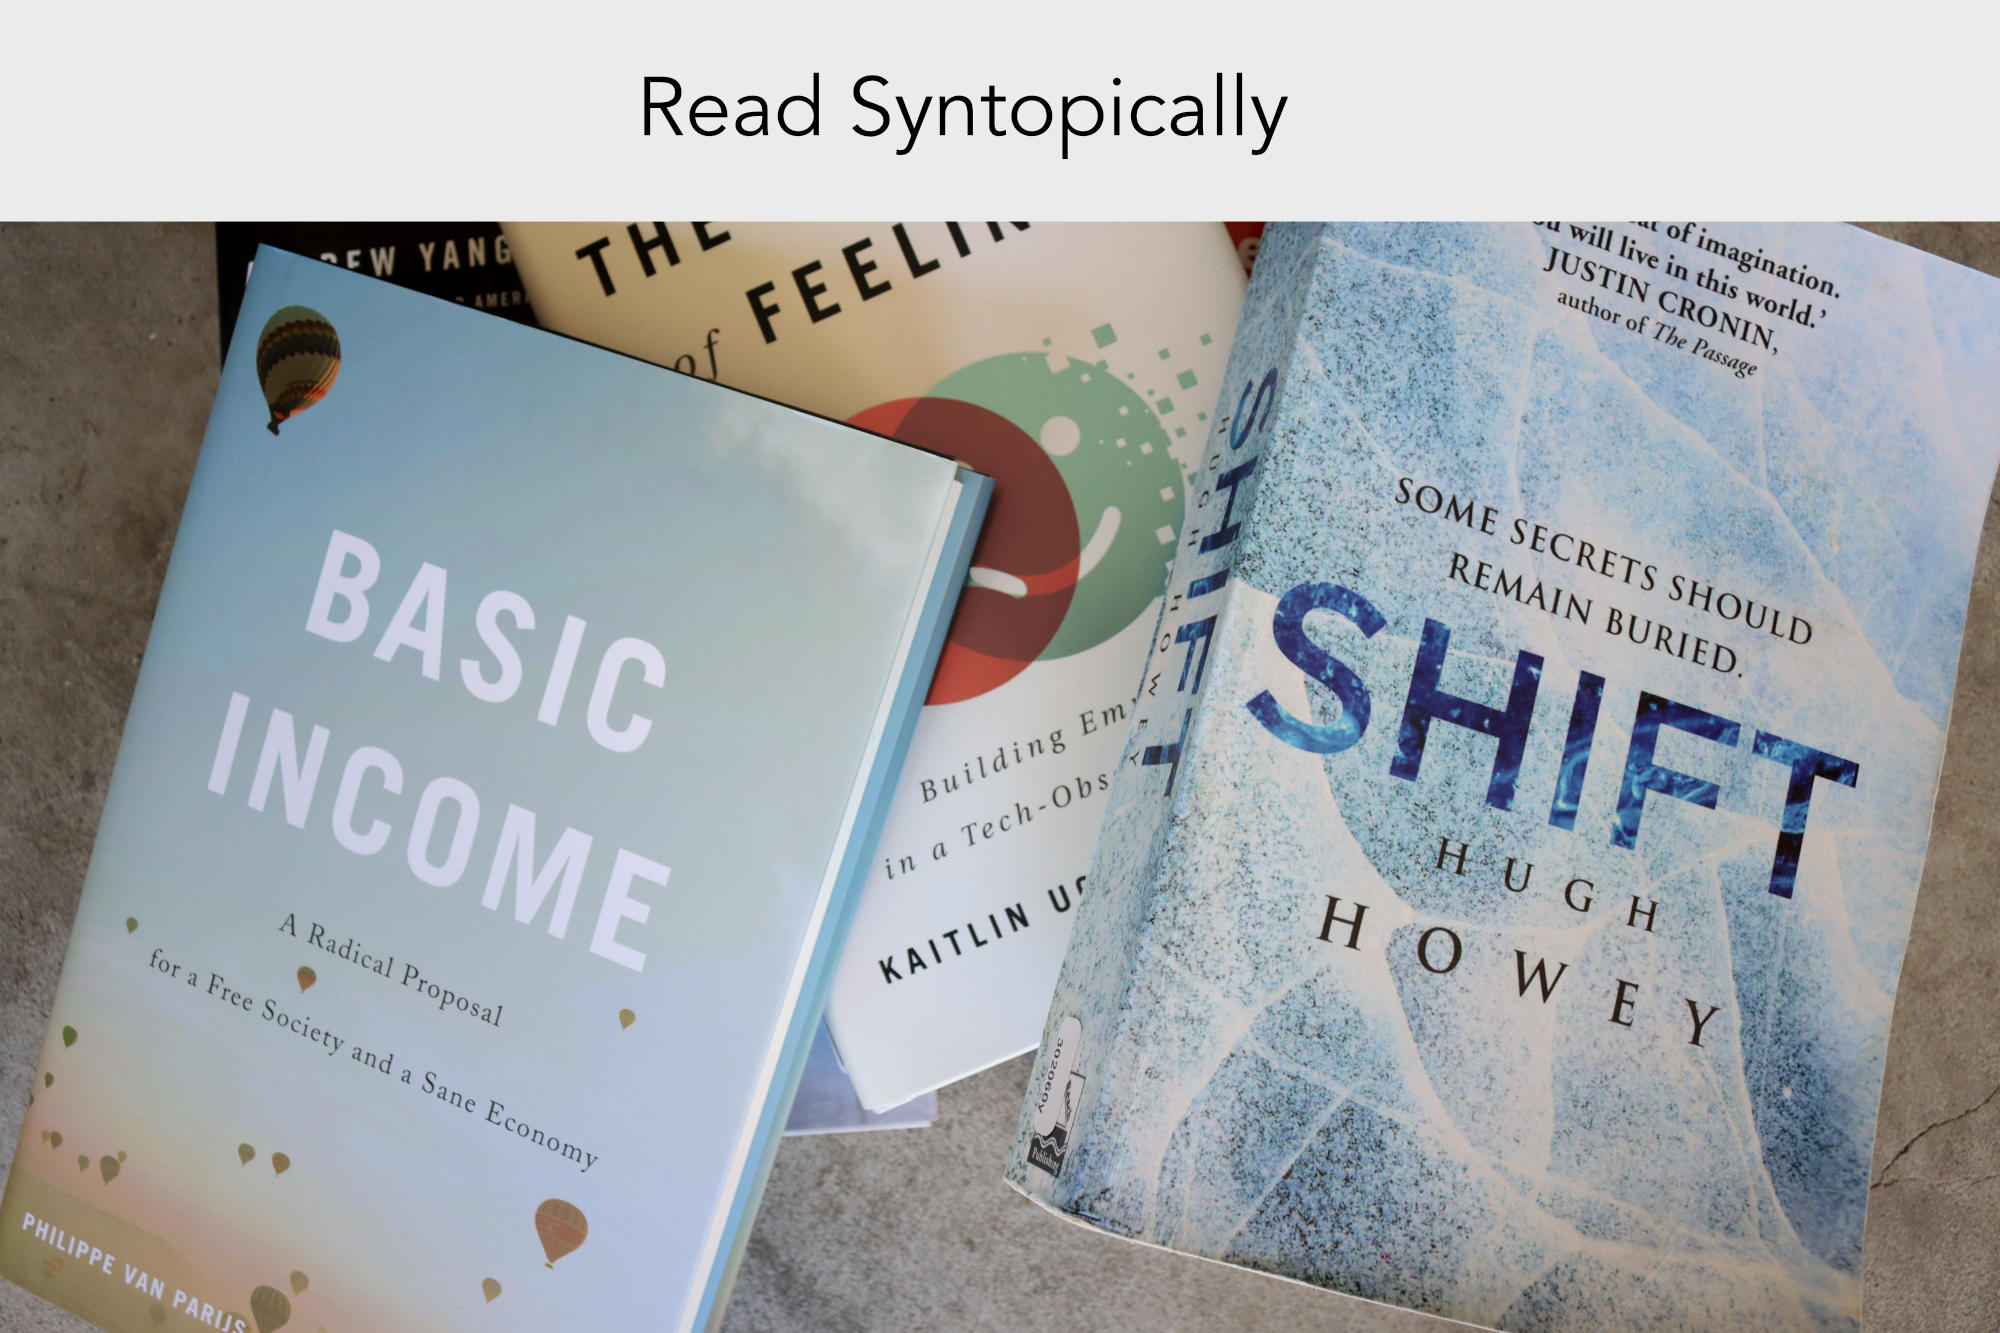 When Do You Read Syntopically